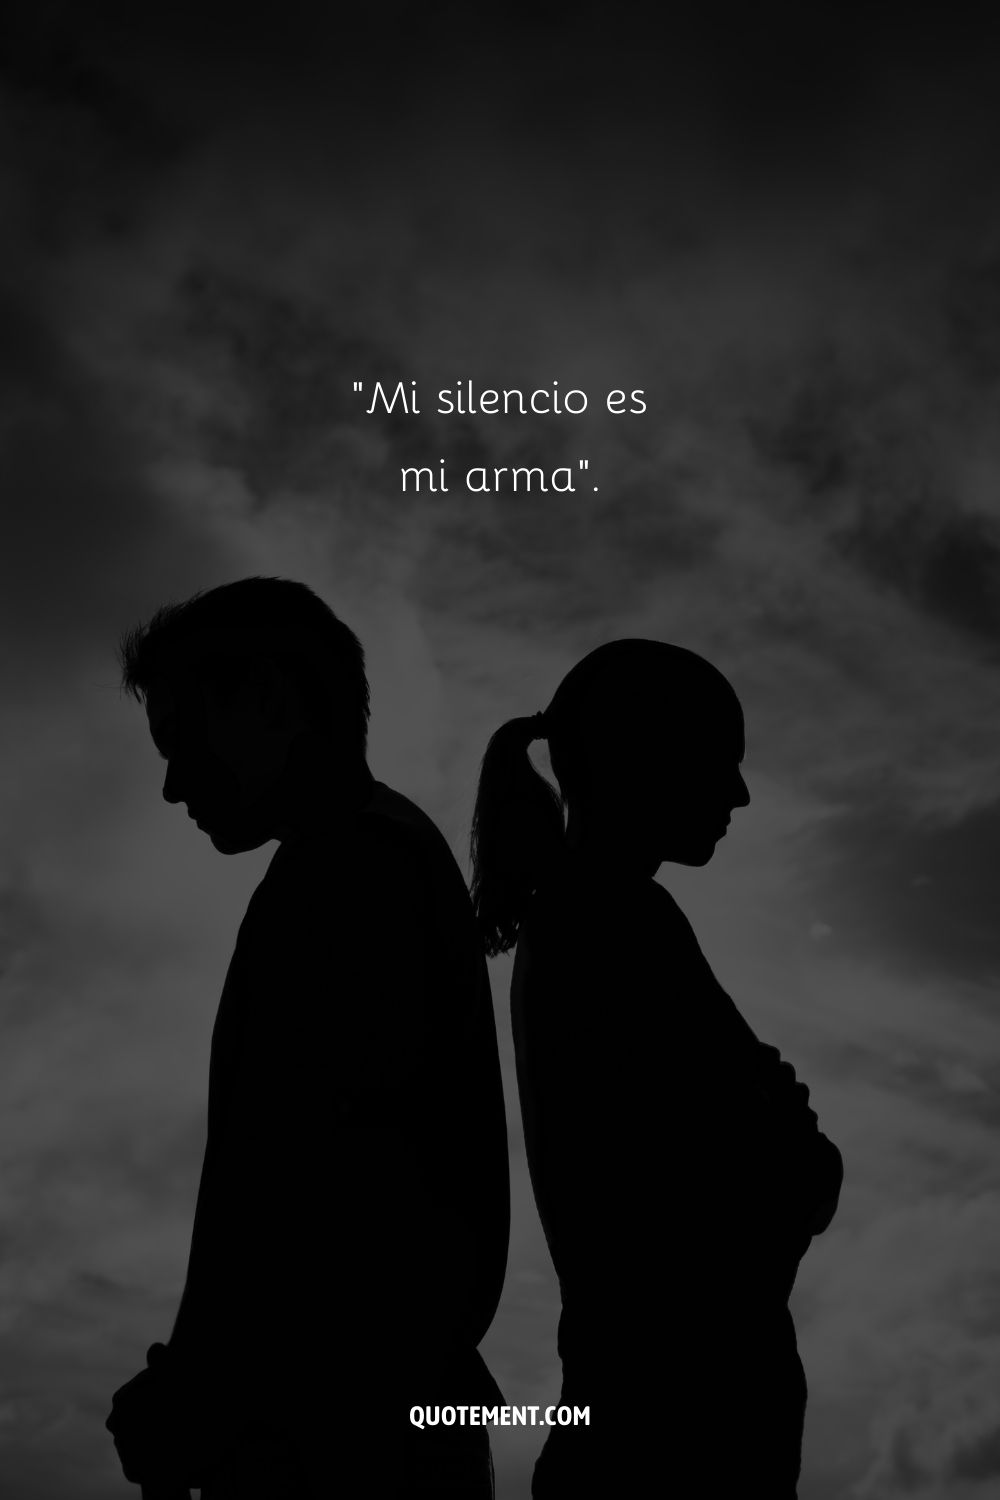 "Mi silencio es mi arma".